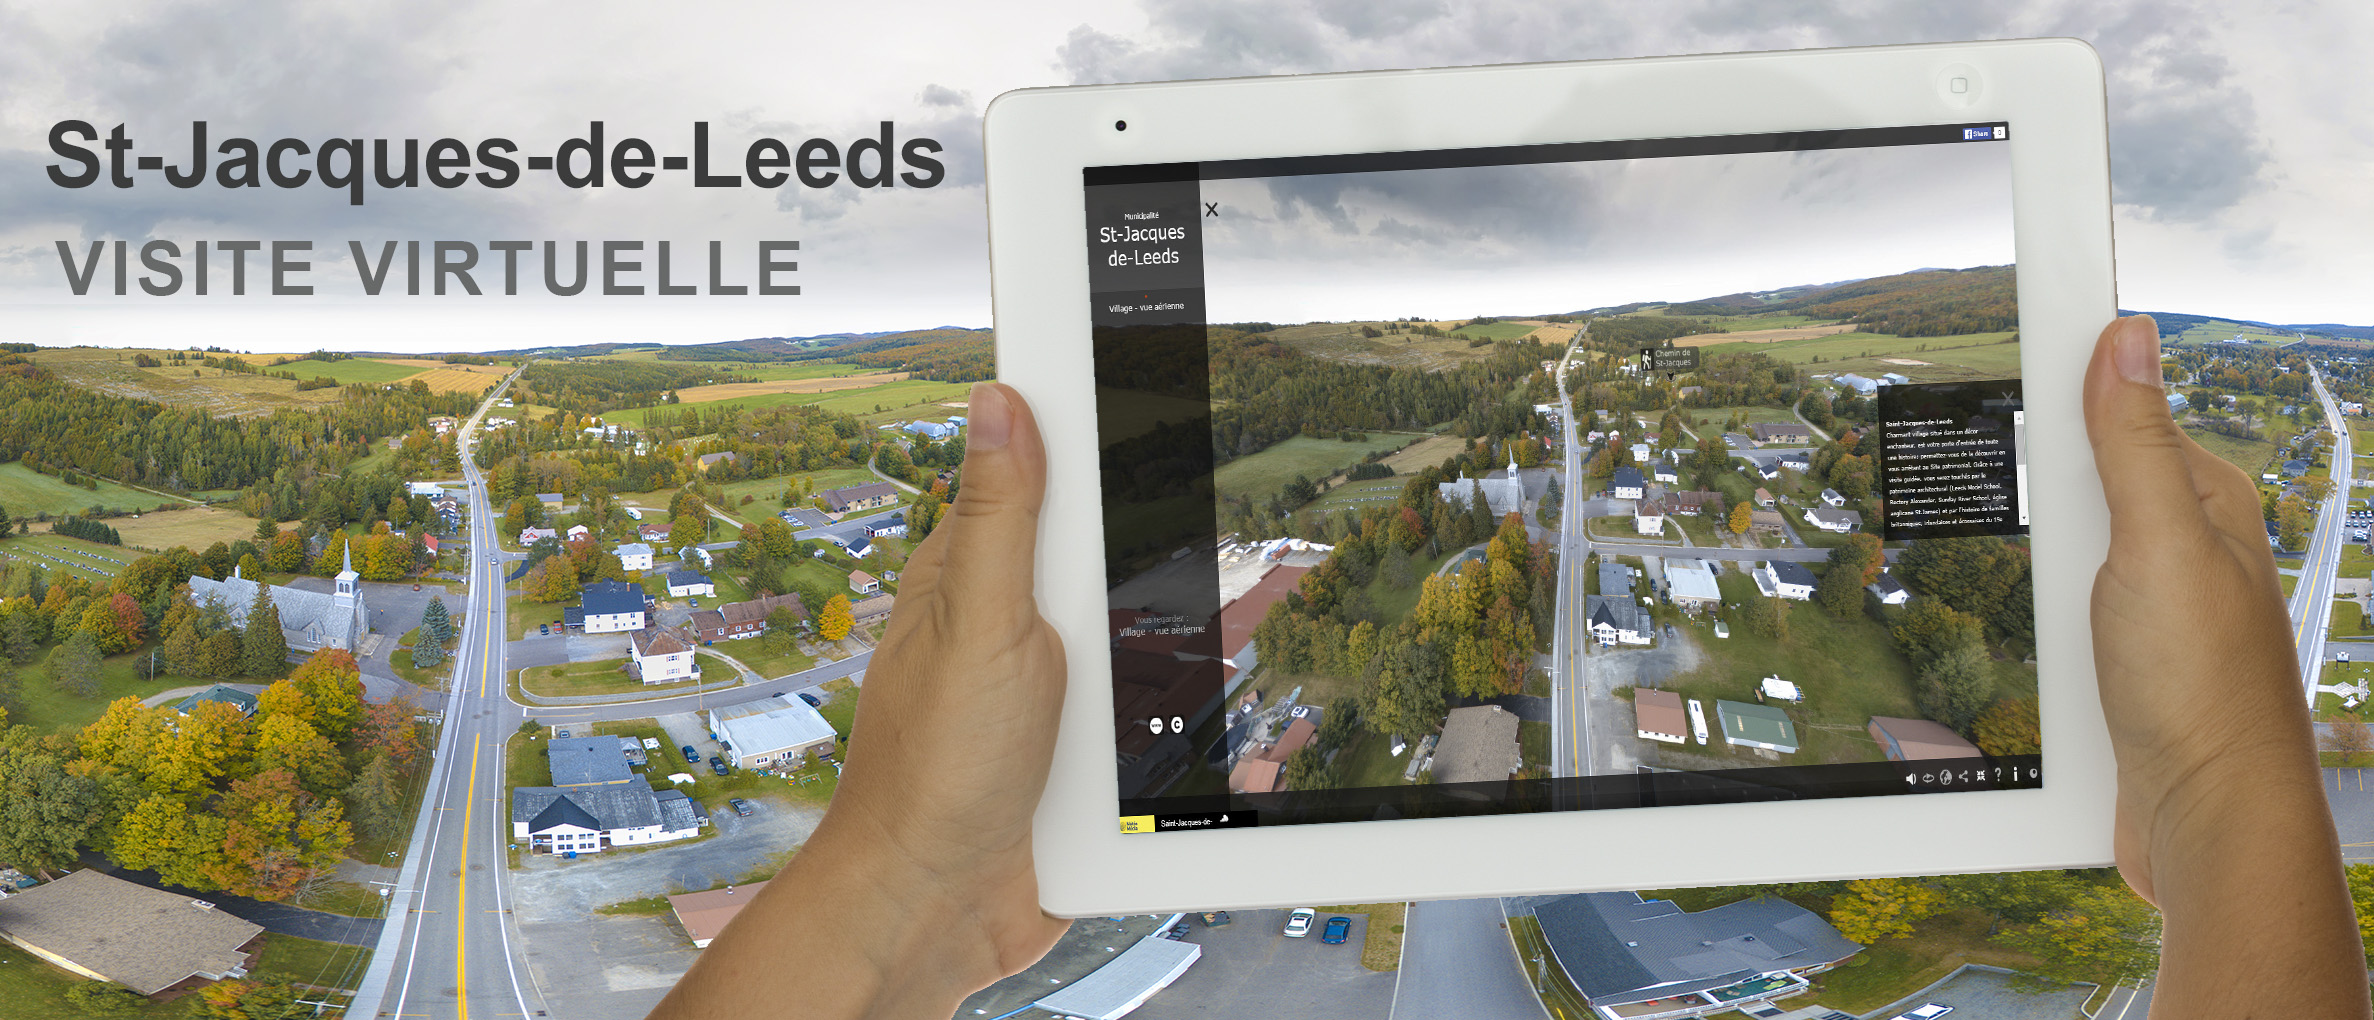 Visite virtuelle 360 degrés St-Jacques-de-Leeds